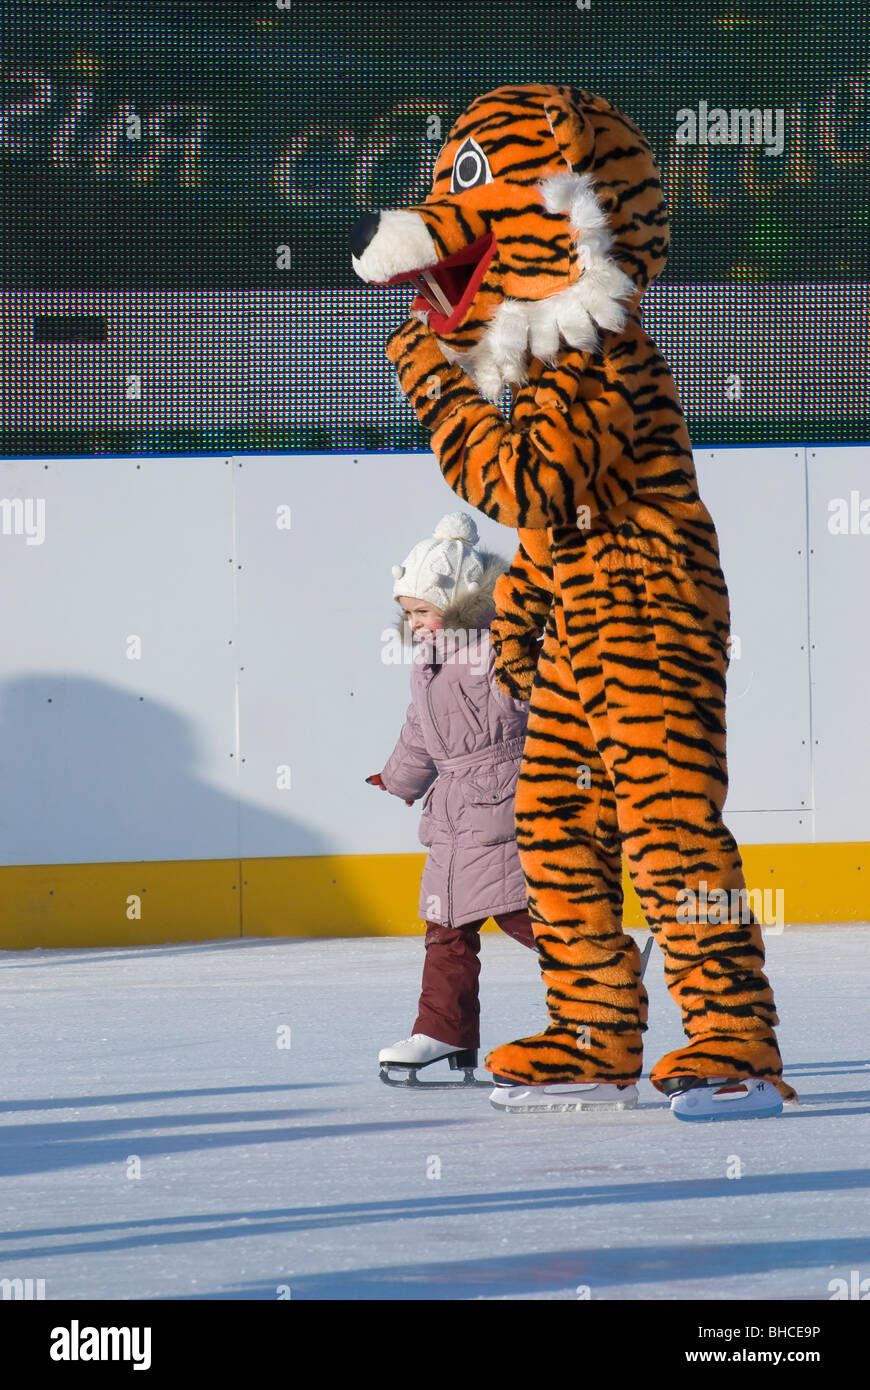 Une petite fille avec un homme habillé en costume de tigre sur la patinoire Banque D'Images